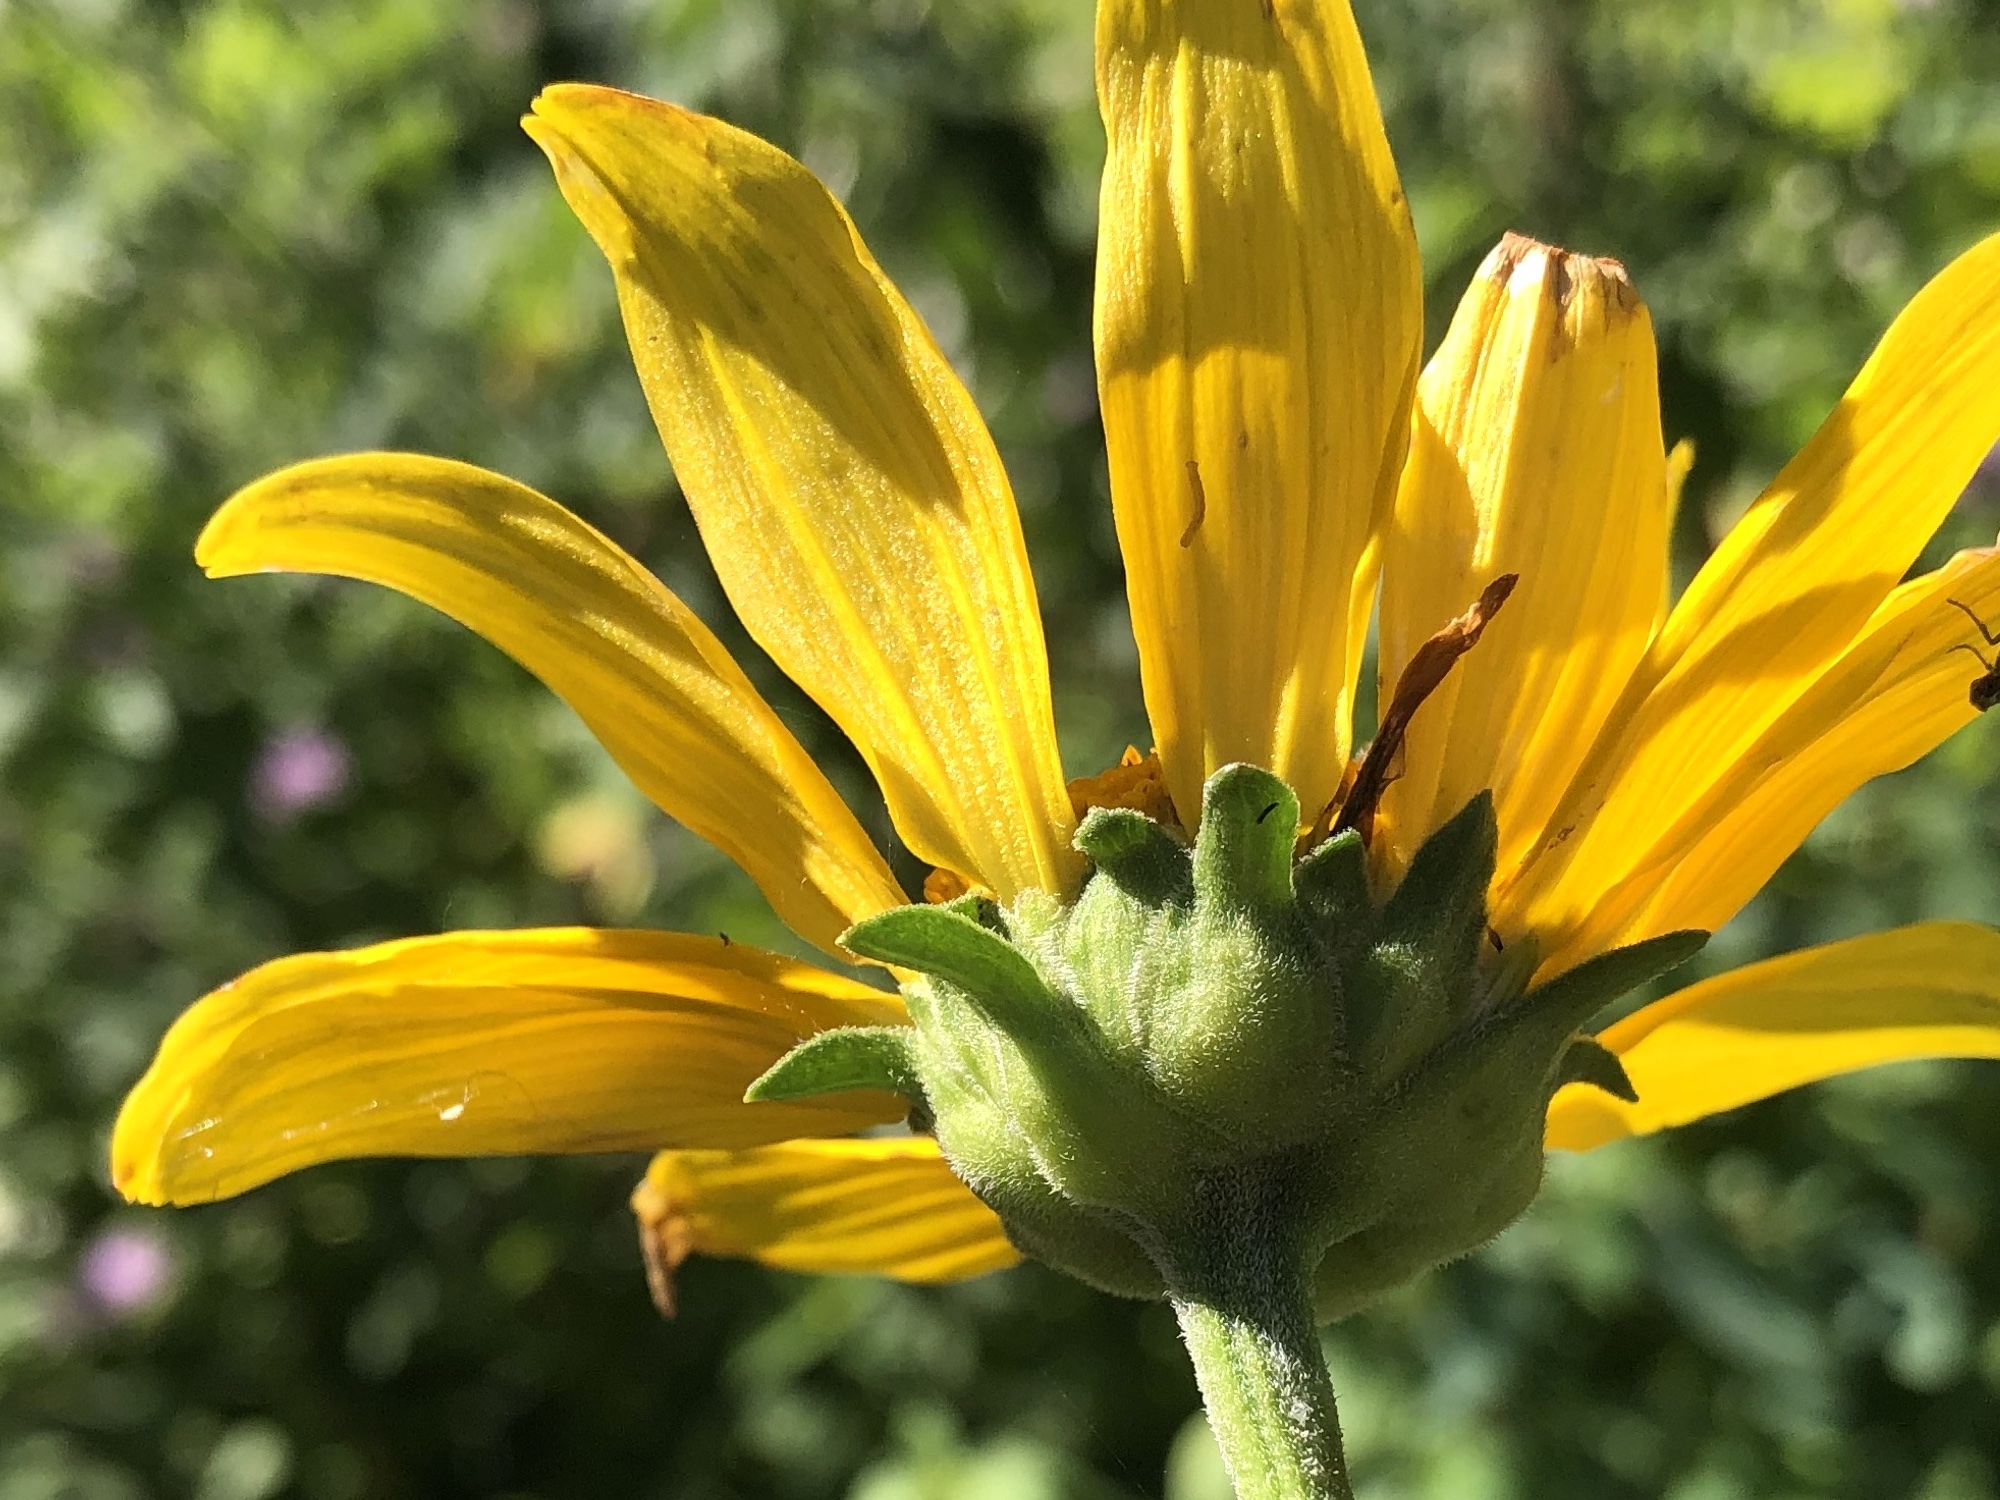 False Sunflower bracts in Oak Savanna in Madison, Wisconsin on July 25, 2022.